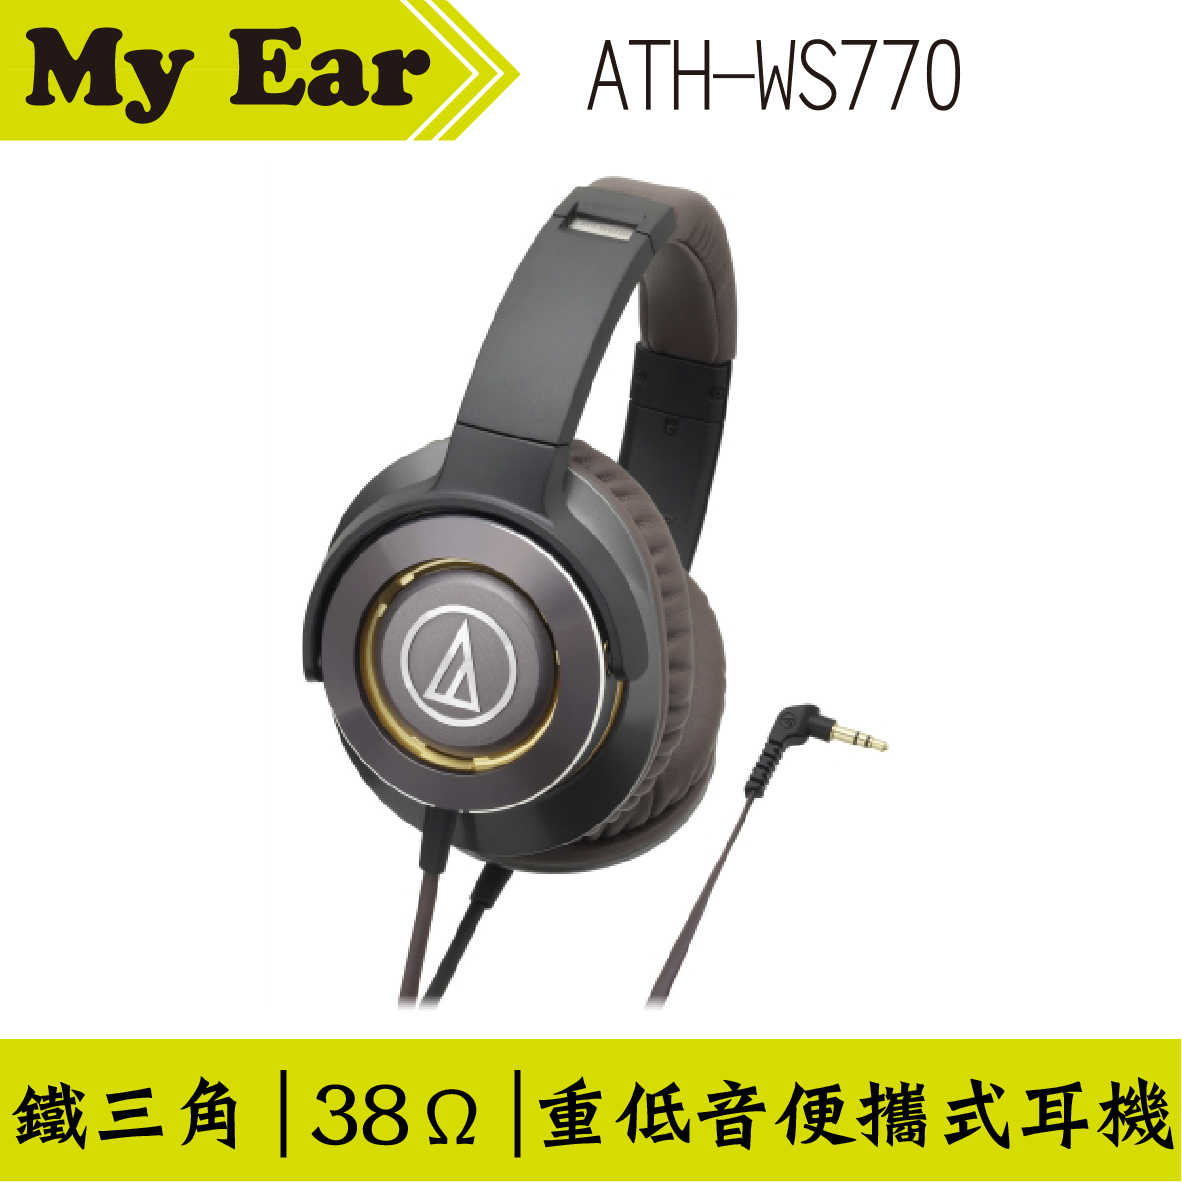 鐵三角 WS770 SOLID BASS 重低音耳罩式耳機 棕色 | My Ear 耳機專門店